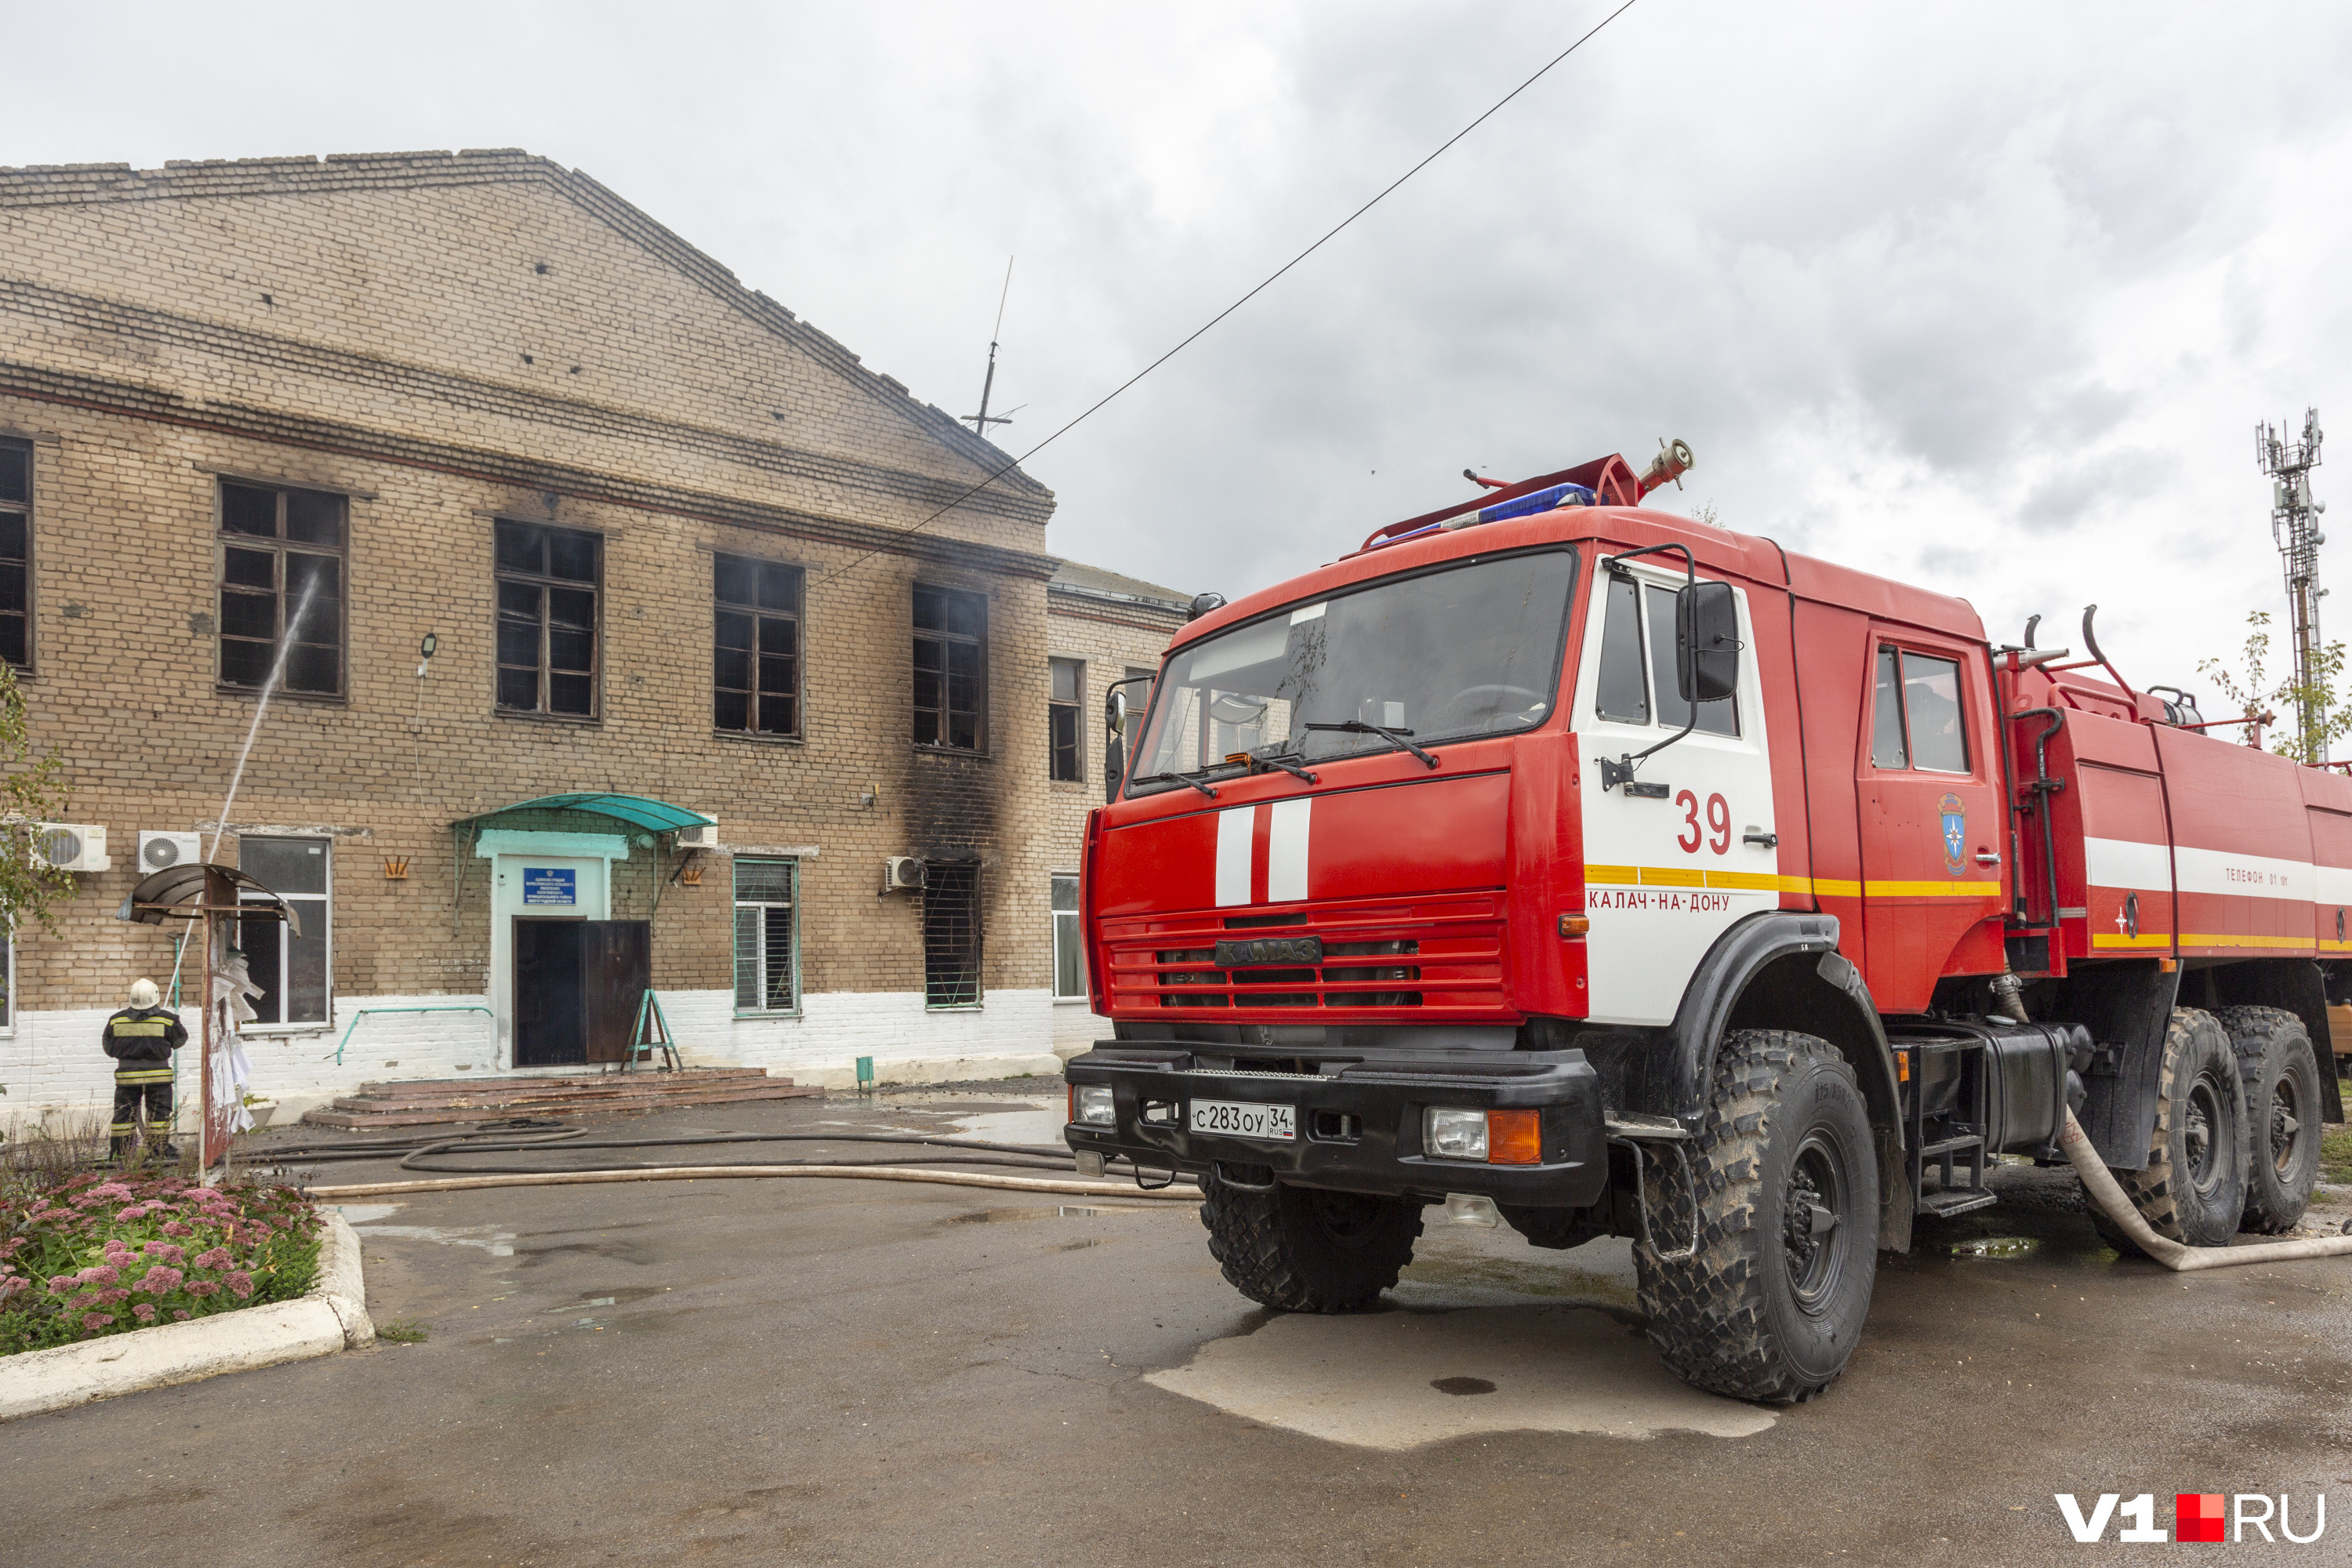 Своей пожарной части в Береславке нет. Пожарным расчетам потребовалось 50 минут, чтобы доехать